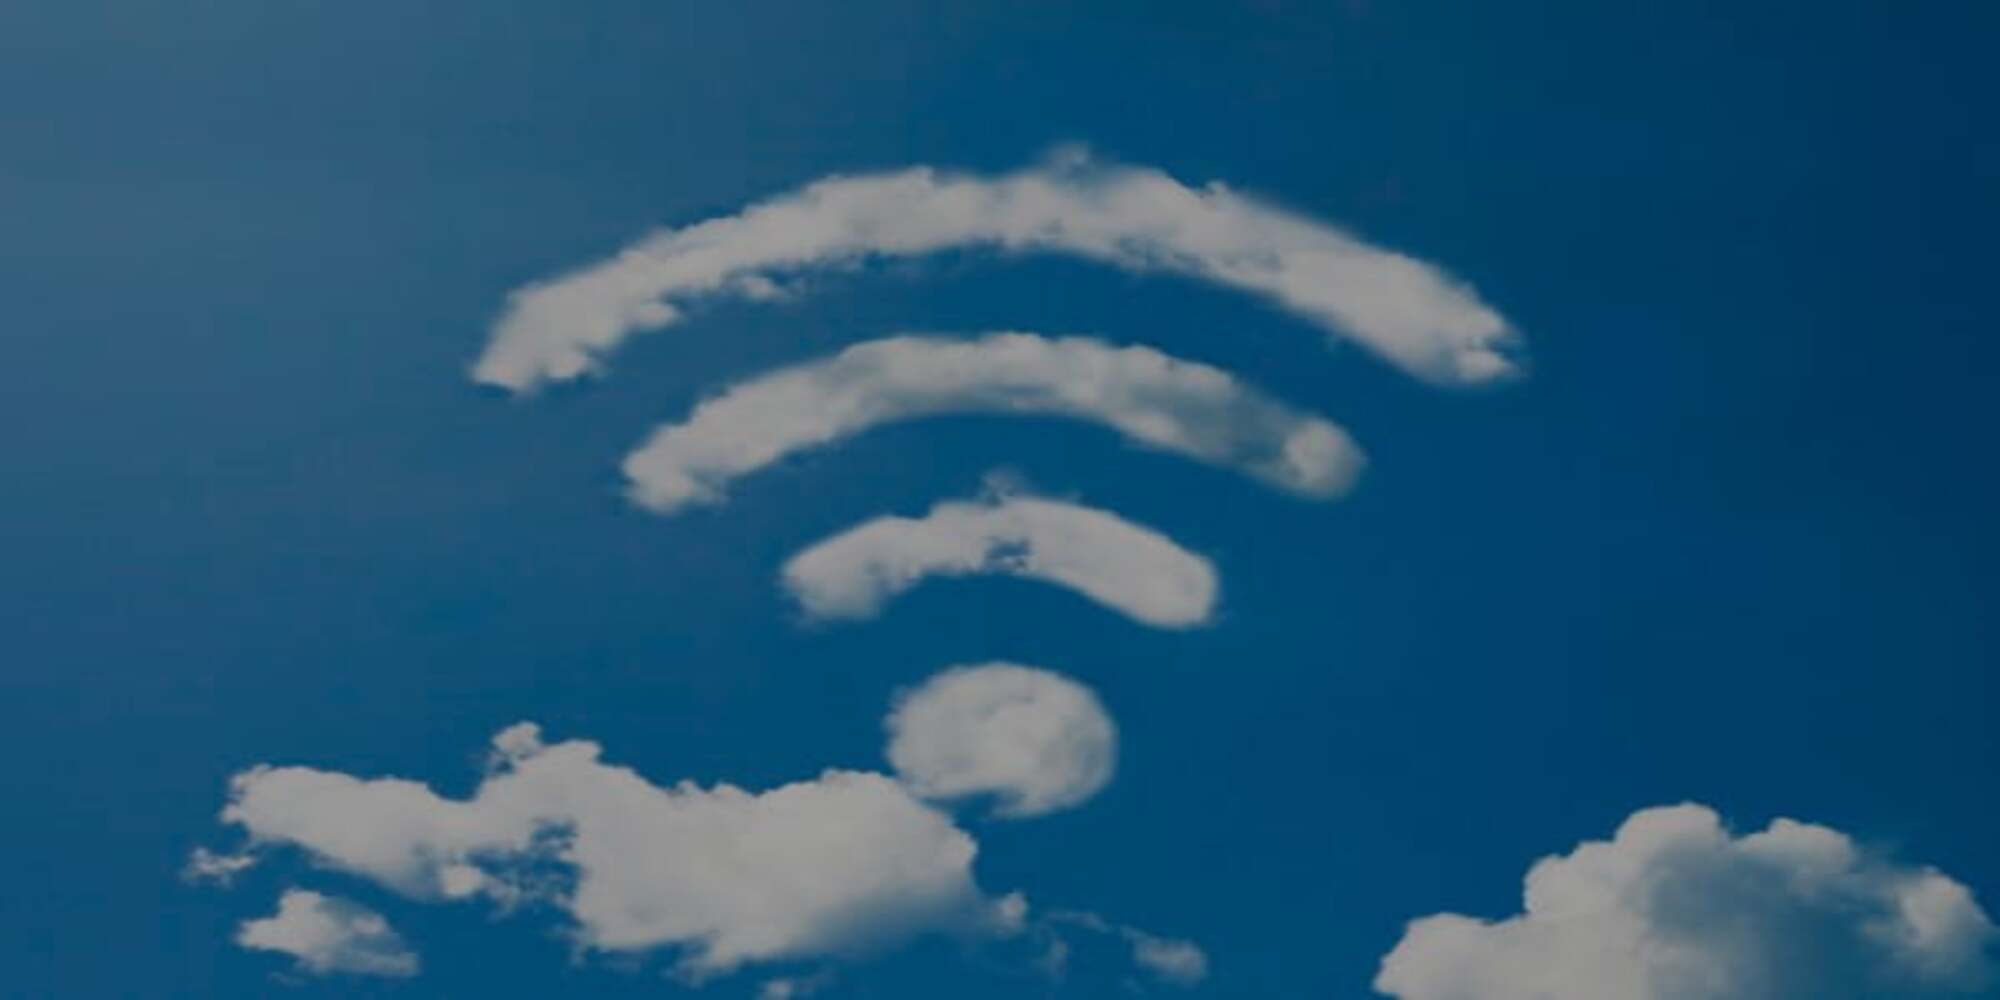 WiFi symbol in the clouds